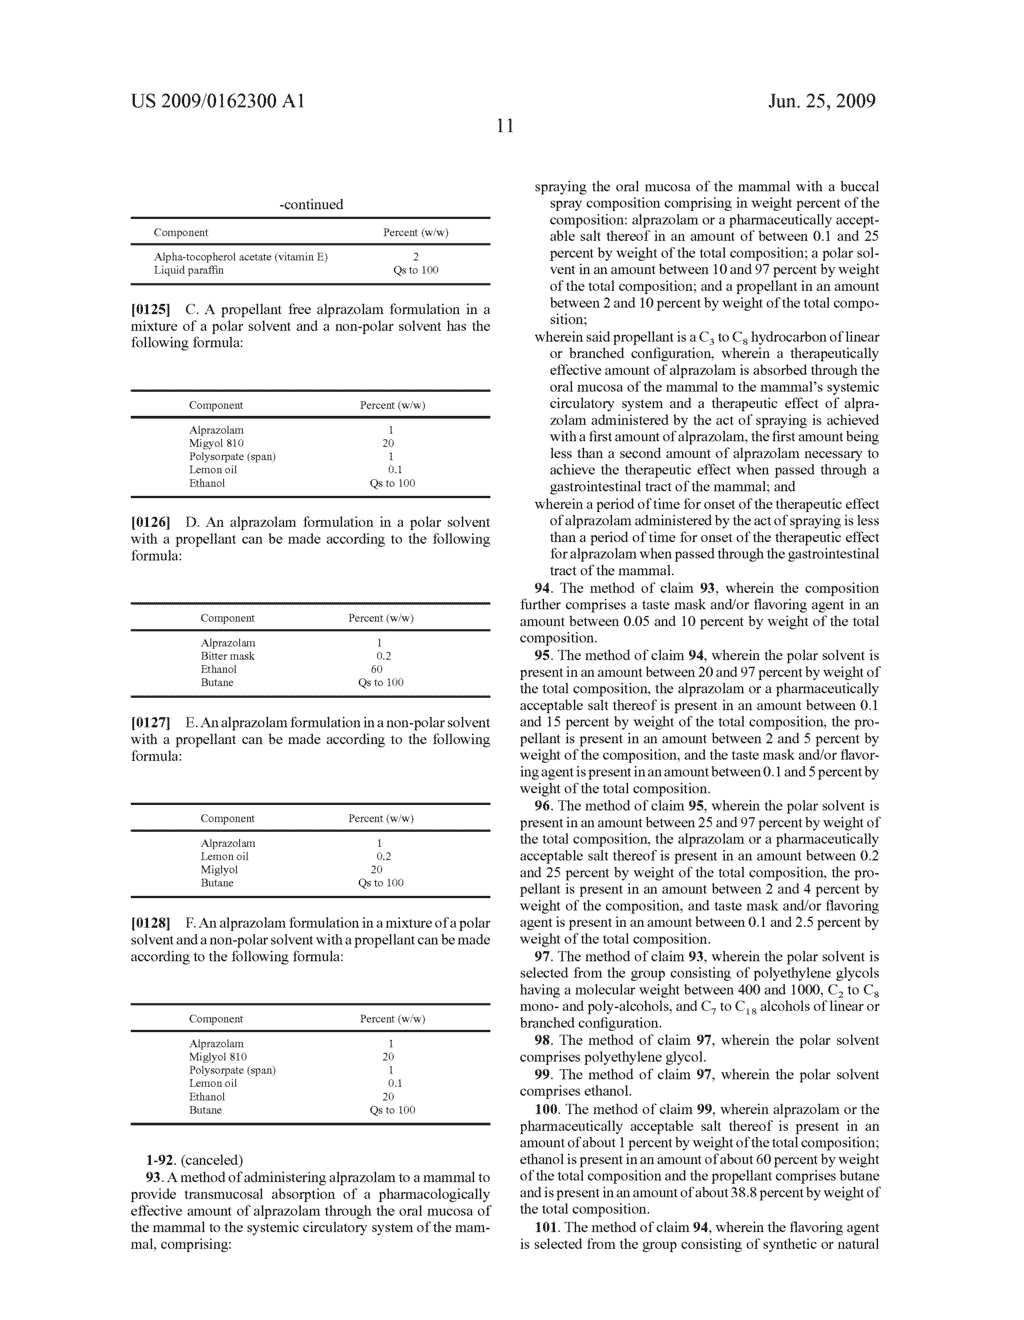 BUCCAL, POLAR AND NON-POLAR SPRAY CONTAINING ALPRAZOLAM - diagram, schematic, and image 13